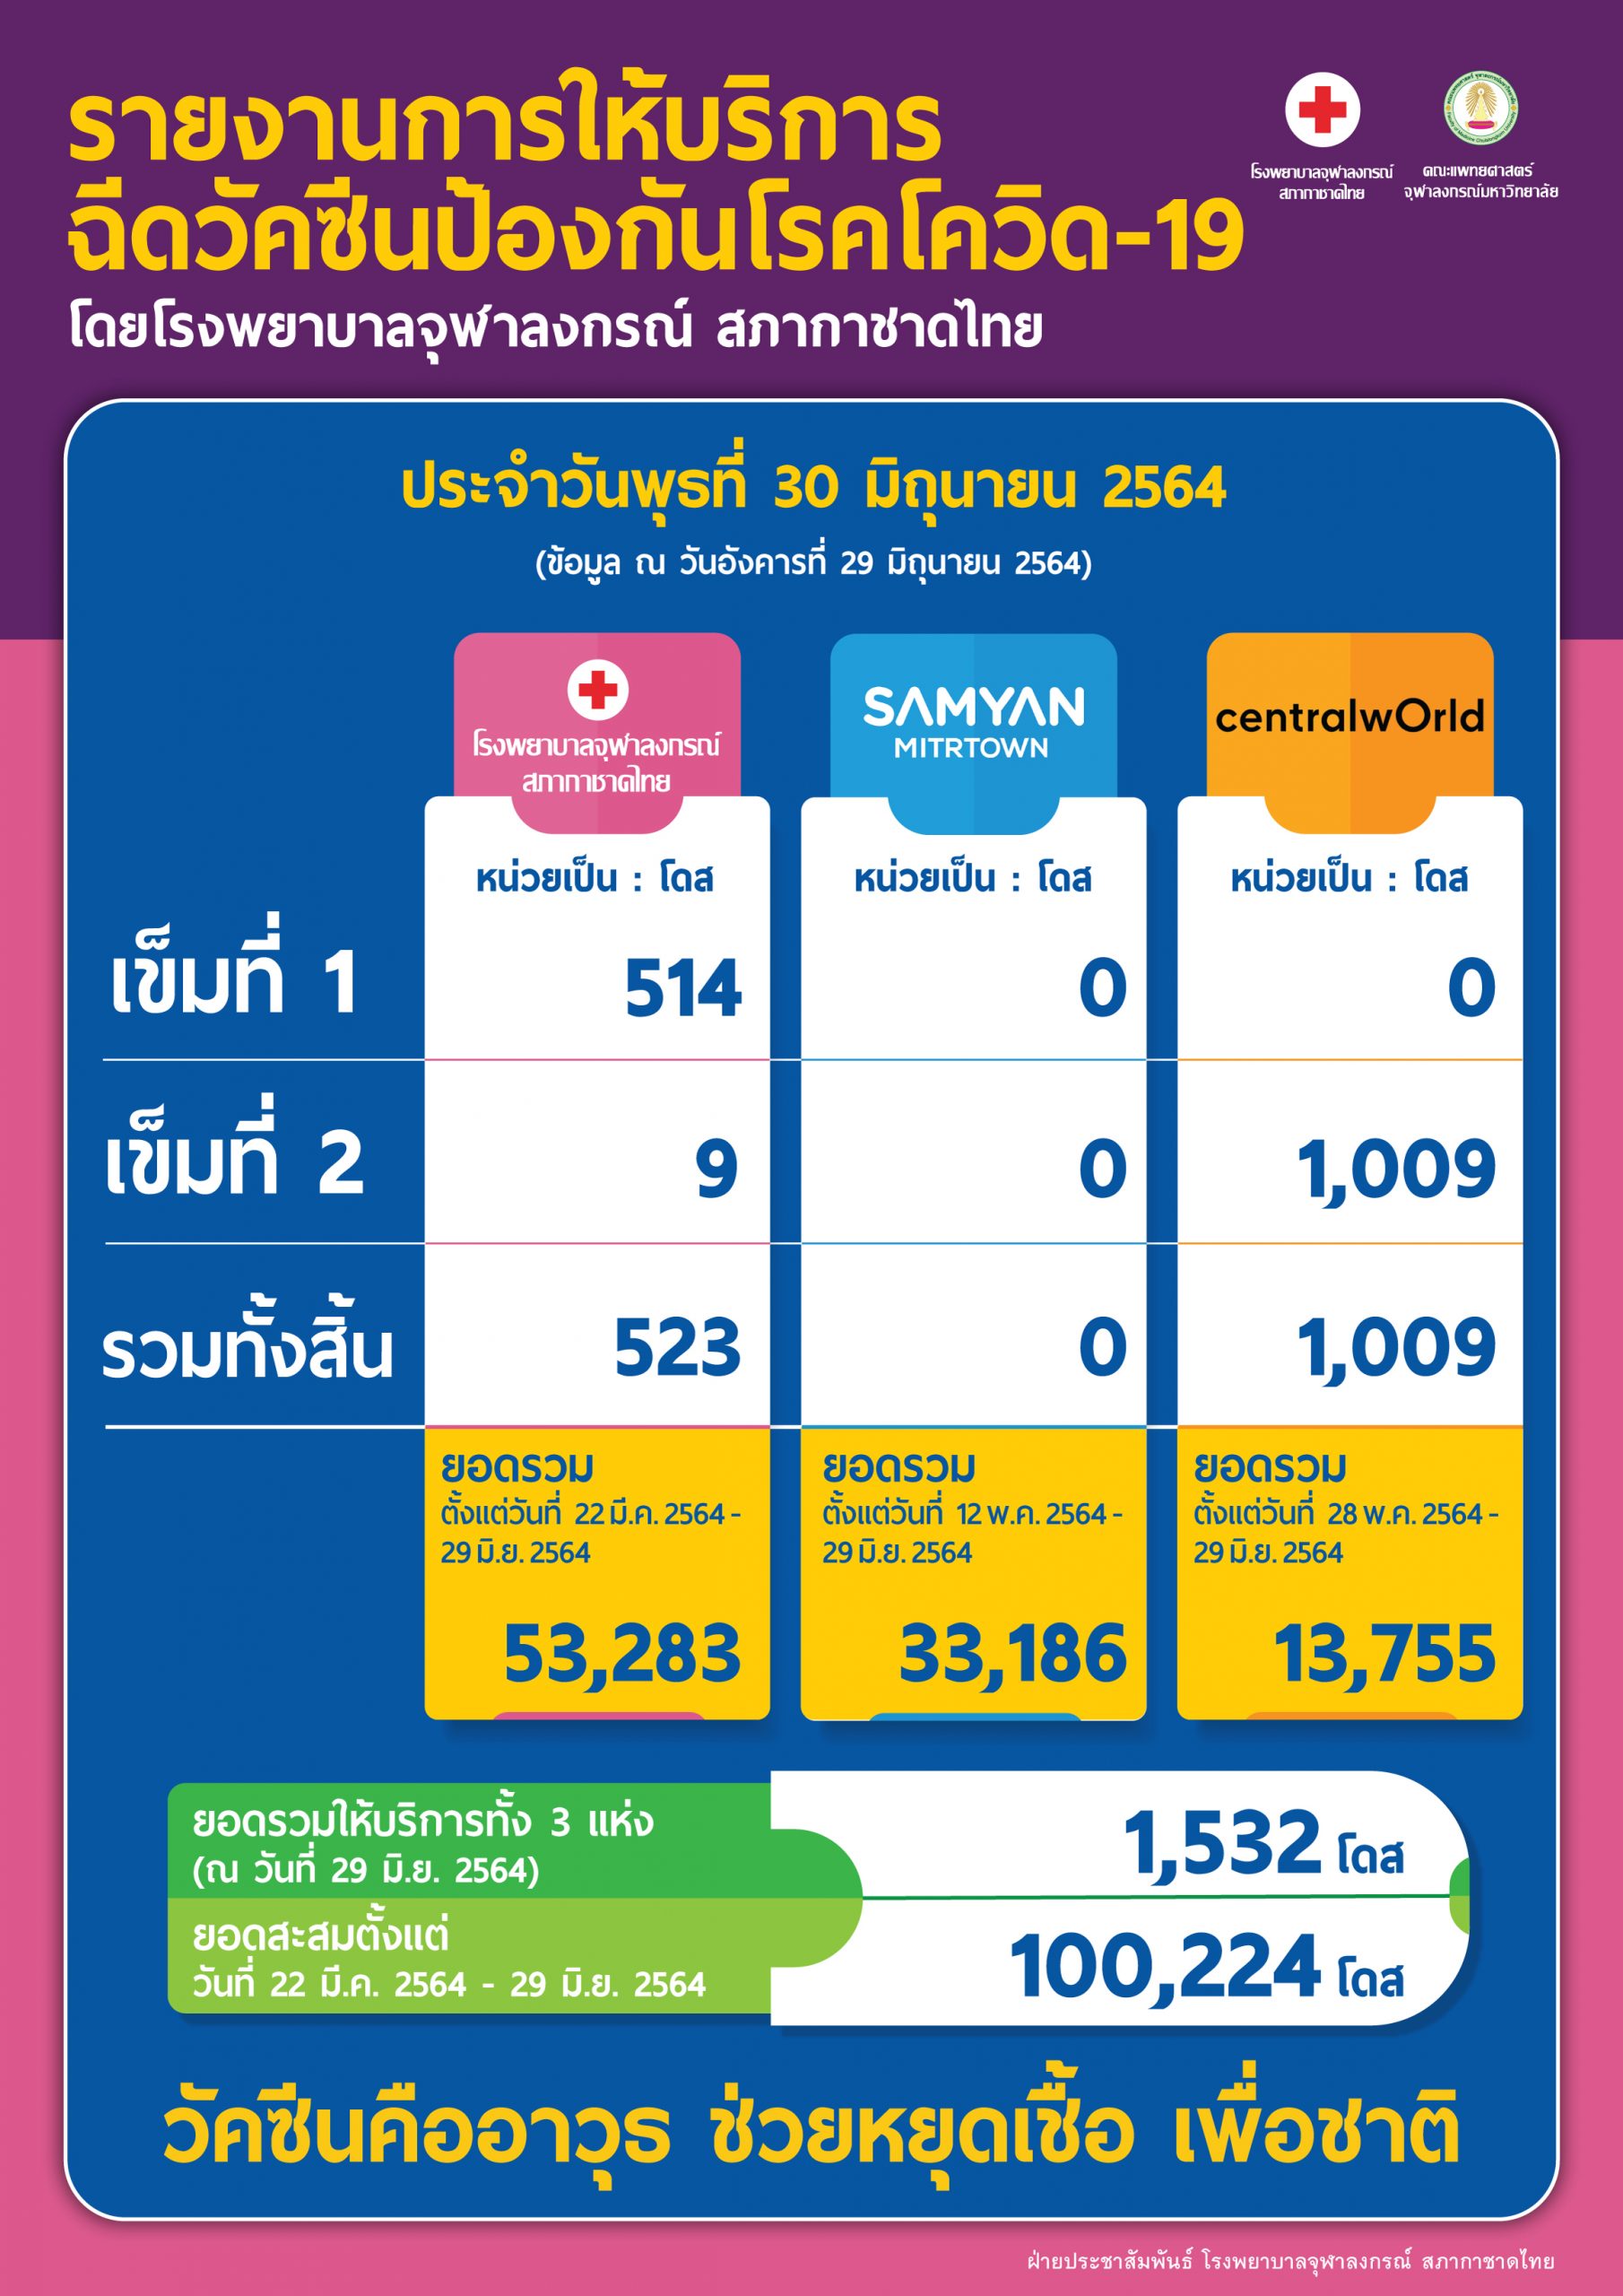 รายงานการให้บริการ ฉีดวัคซีนป้องกันโรคโควิด-19 โดยโรงพยาบาลจุฬาลงกรณ์ สภากาชาดไทย ประจำวันพุธที่ 30 มิถุนายน 2564